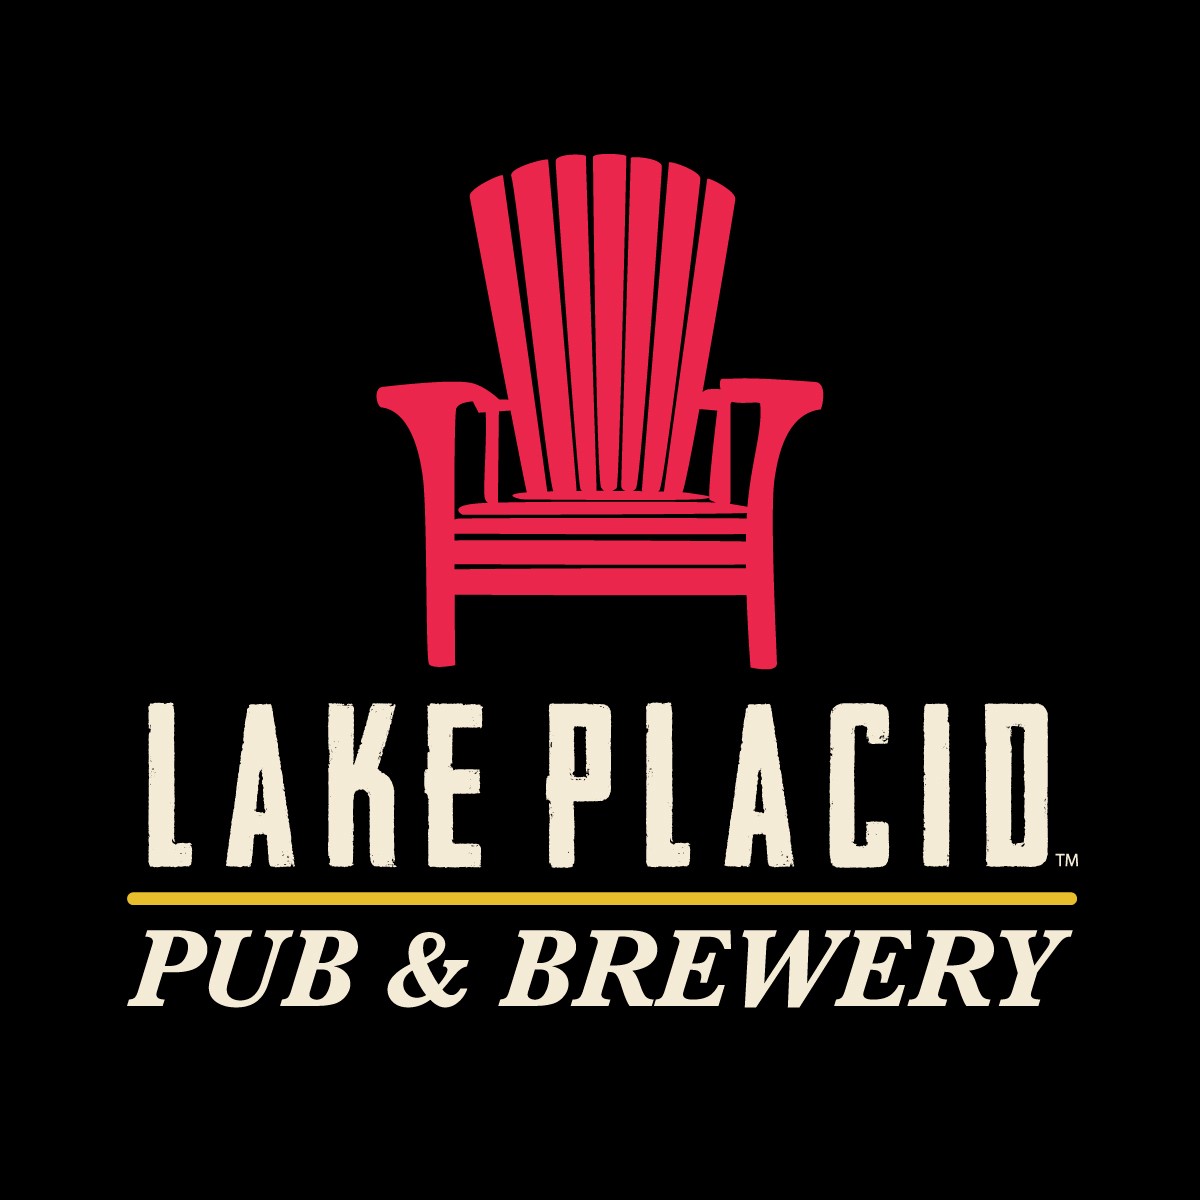 Lake Placid Pub & Brewery Lake Placid Pub & Brewery